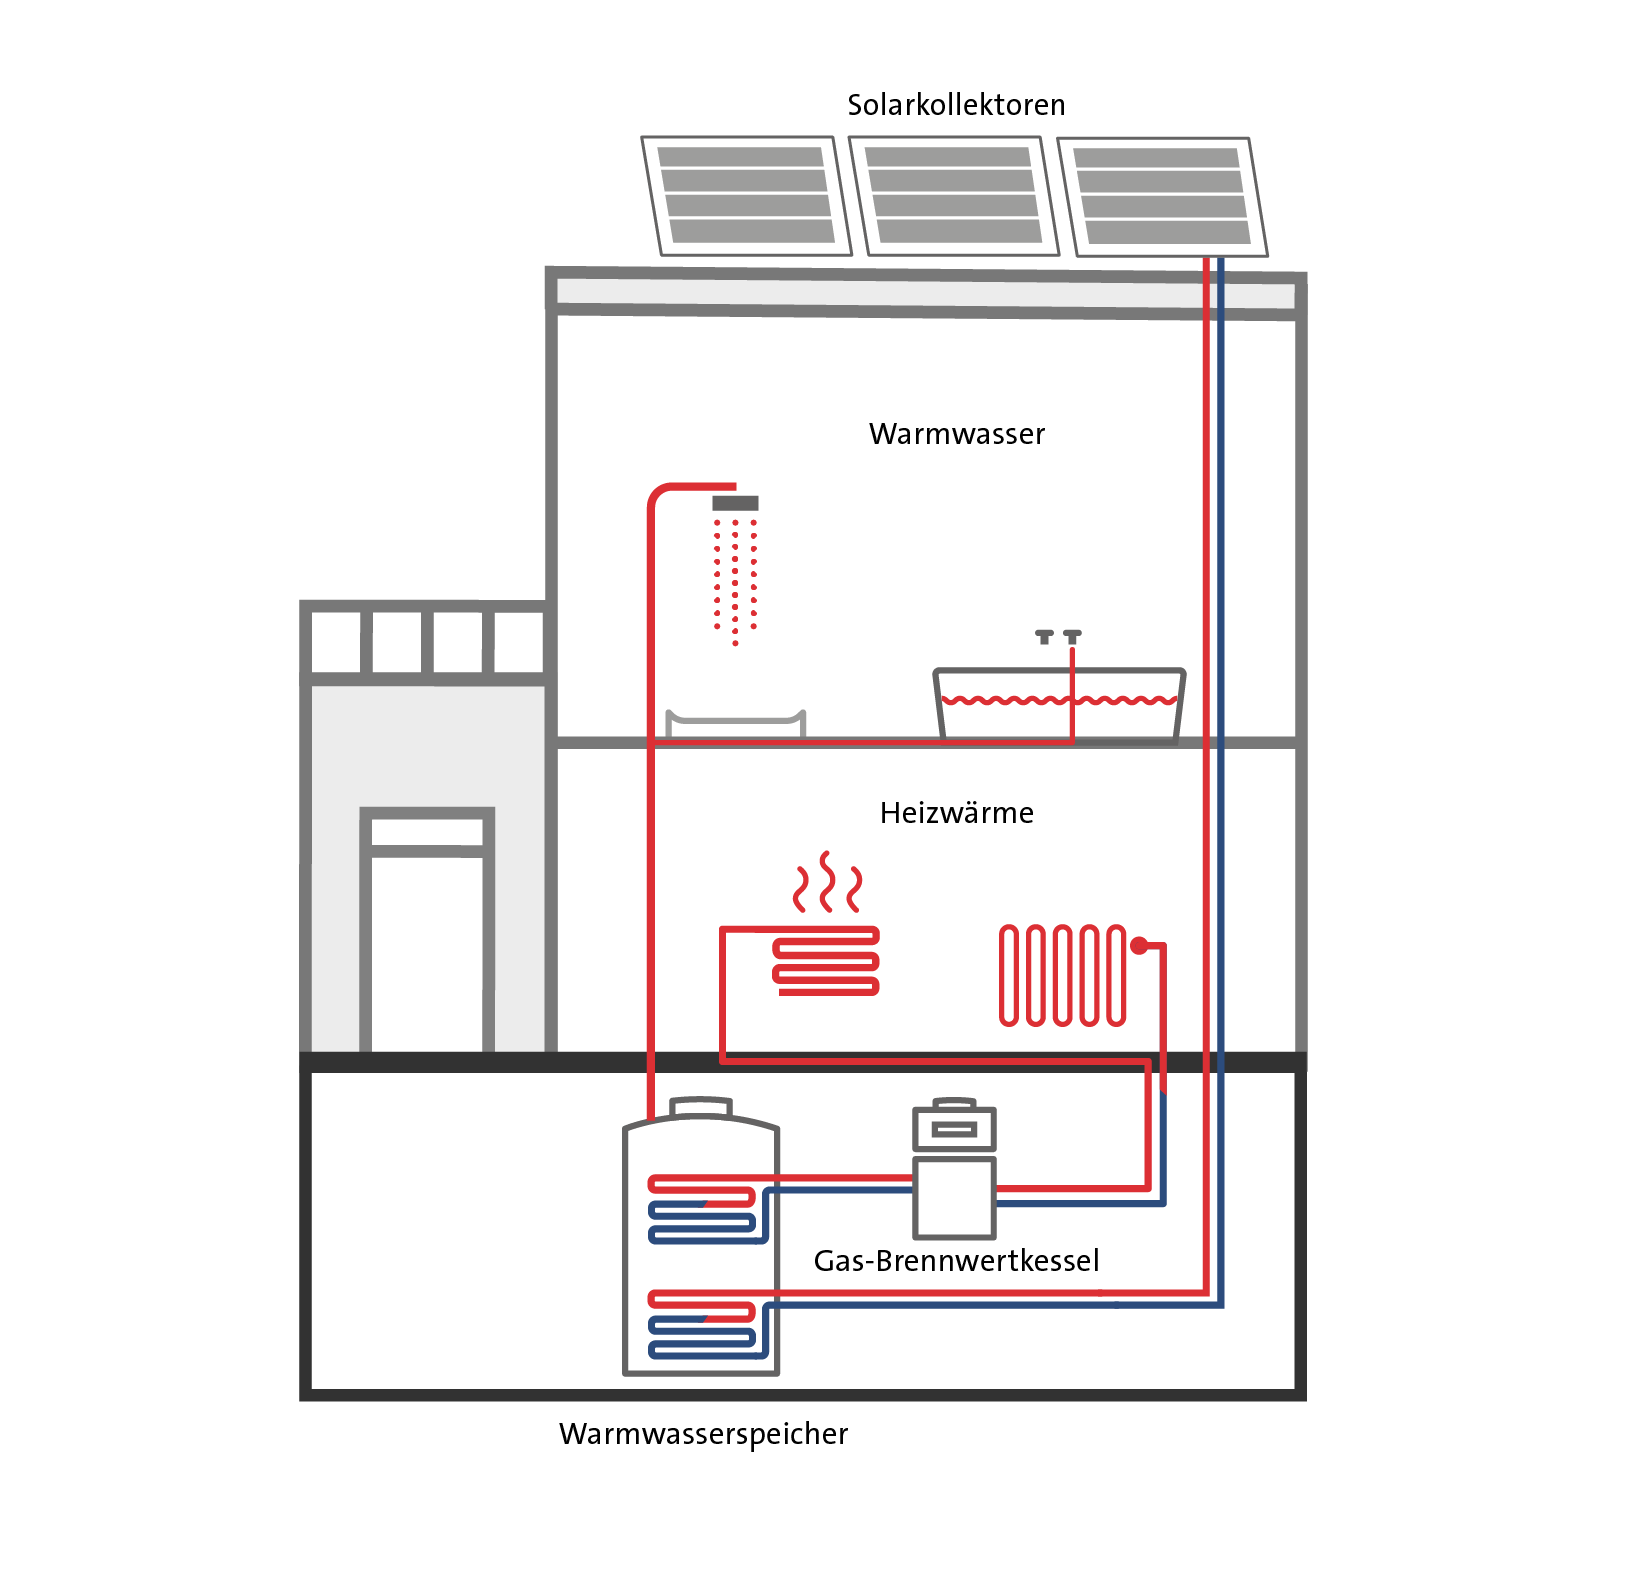 Schematische Darstellung eines Wohnhauses, in dem eine Gas-Hybridheizung – bestehen aus Gas-Brennwertkessel, Solar-Kollektoren und Warmwasser-Speicher.